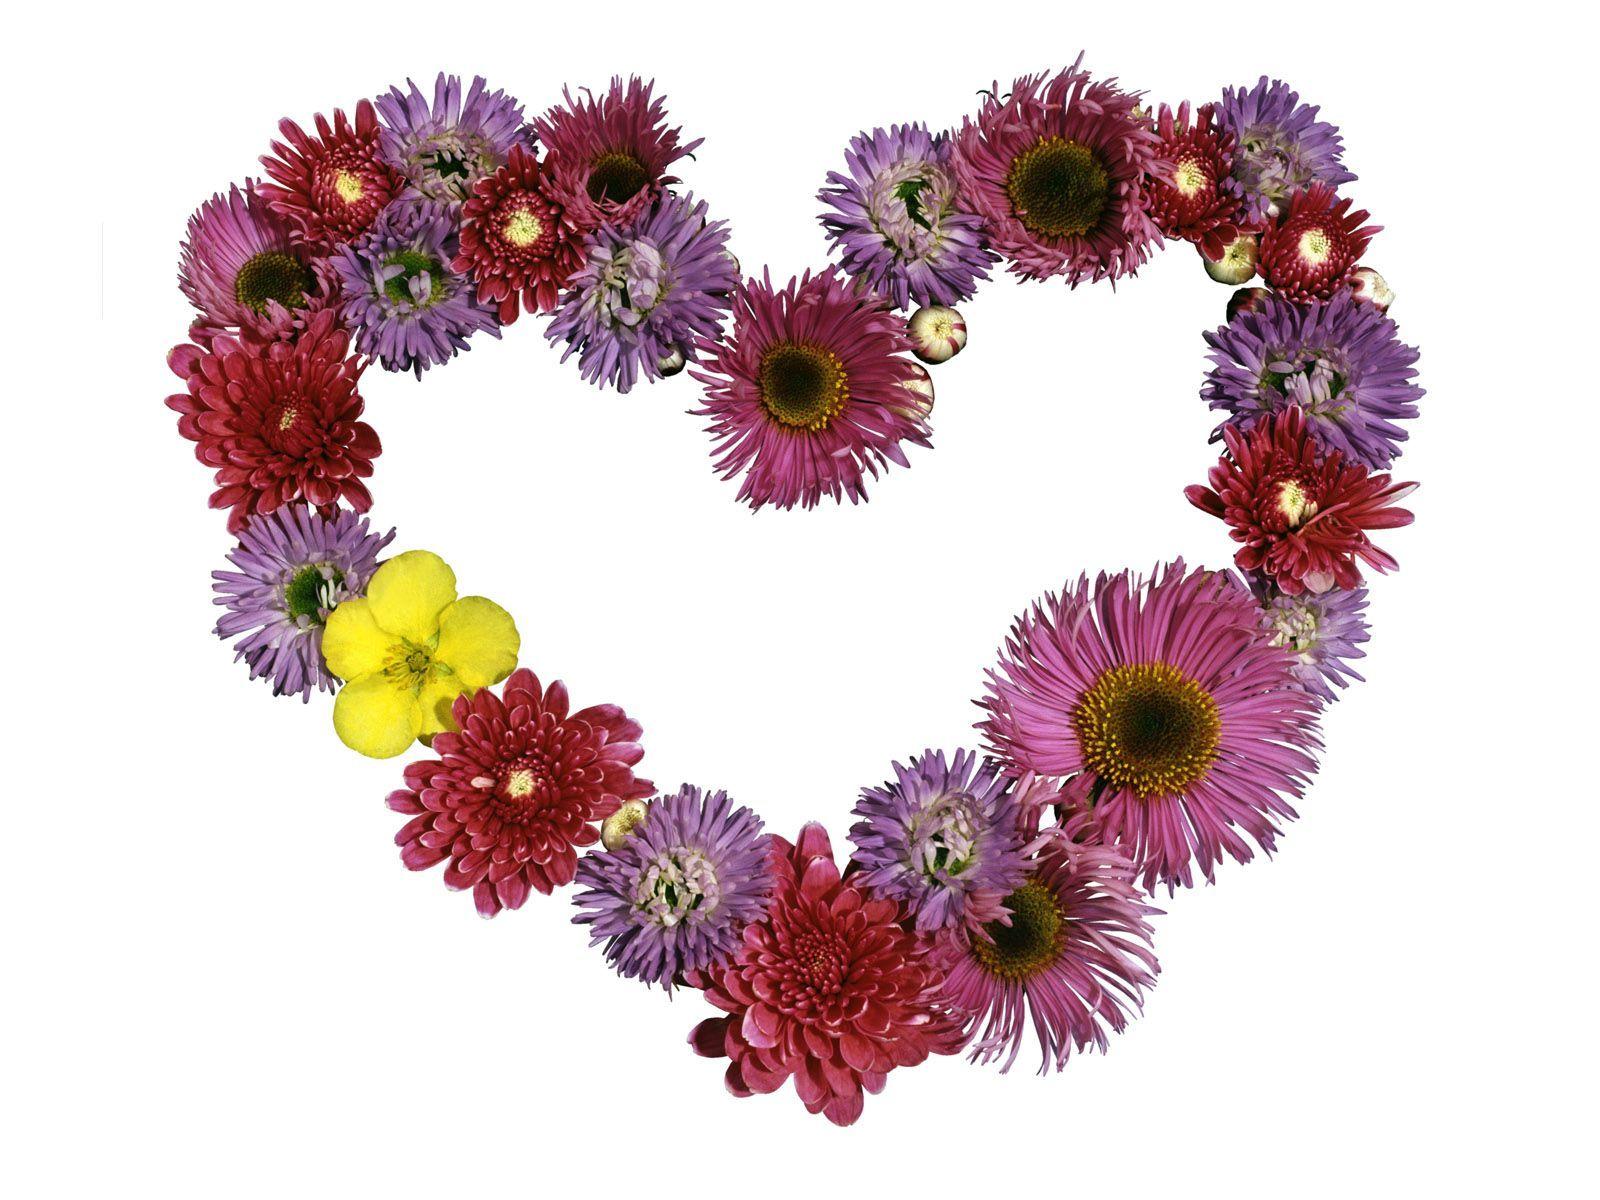 Free Love, Heart Shaped Flower Desktop Wallpaper Wallpaper